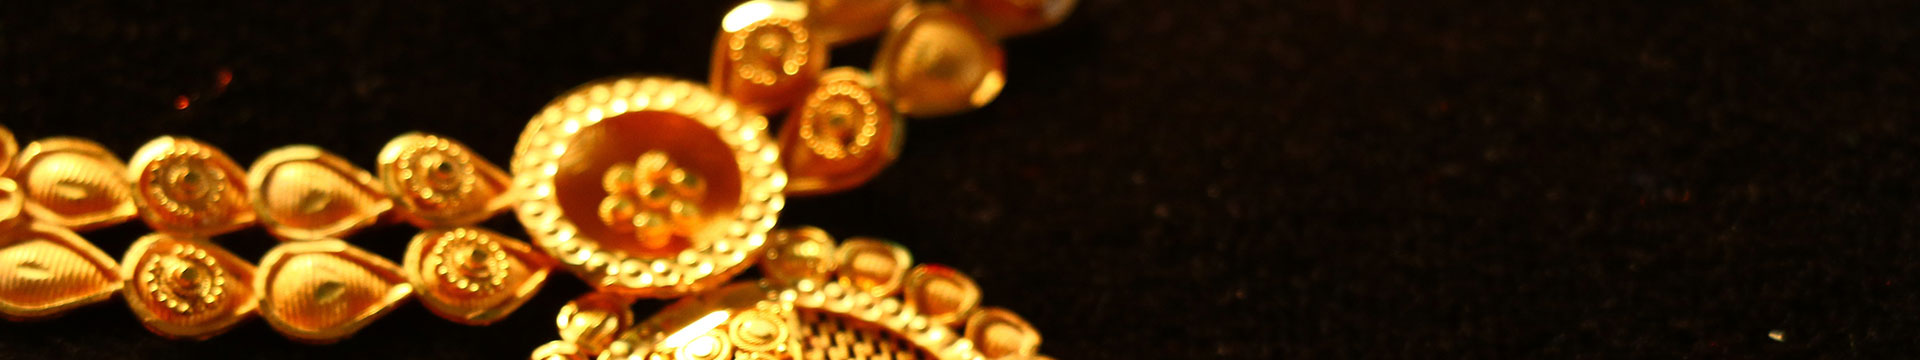 展寬珠寶 黃金回收 黃金價格 賣黃金 黃金買賣 黃金牌價 黃金價格查詢 黃金 金價查詢 金價 展寬珠寶國際有限公司